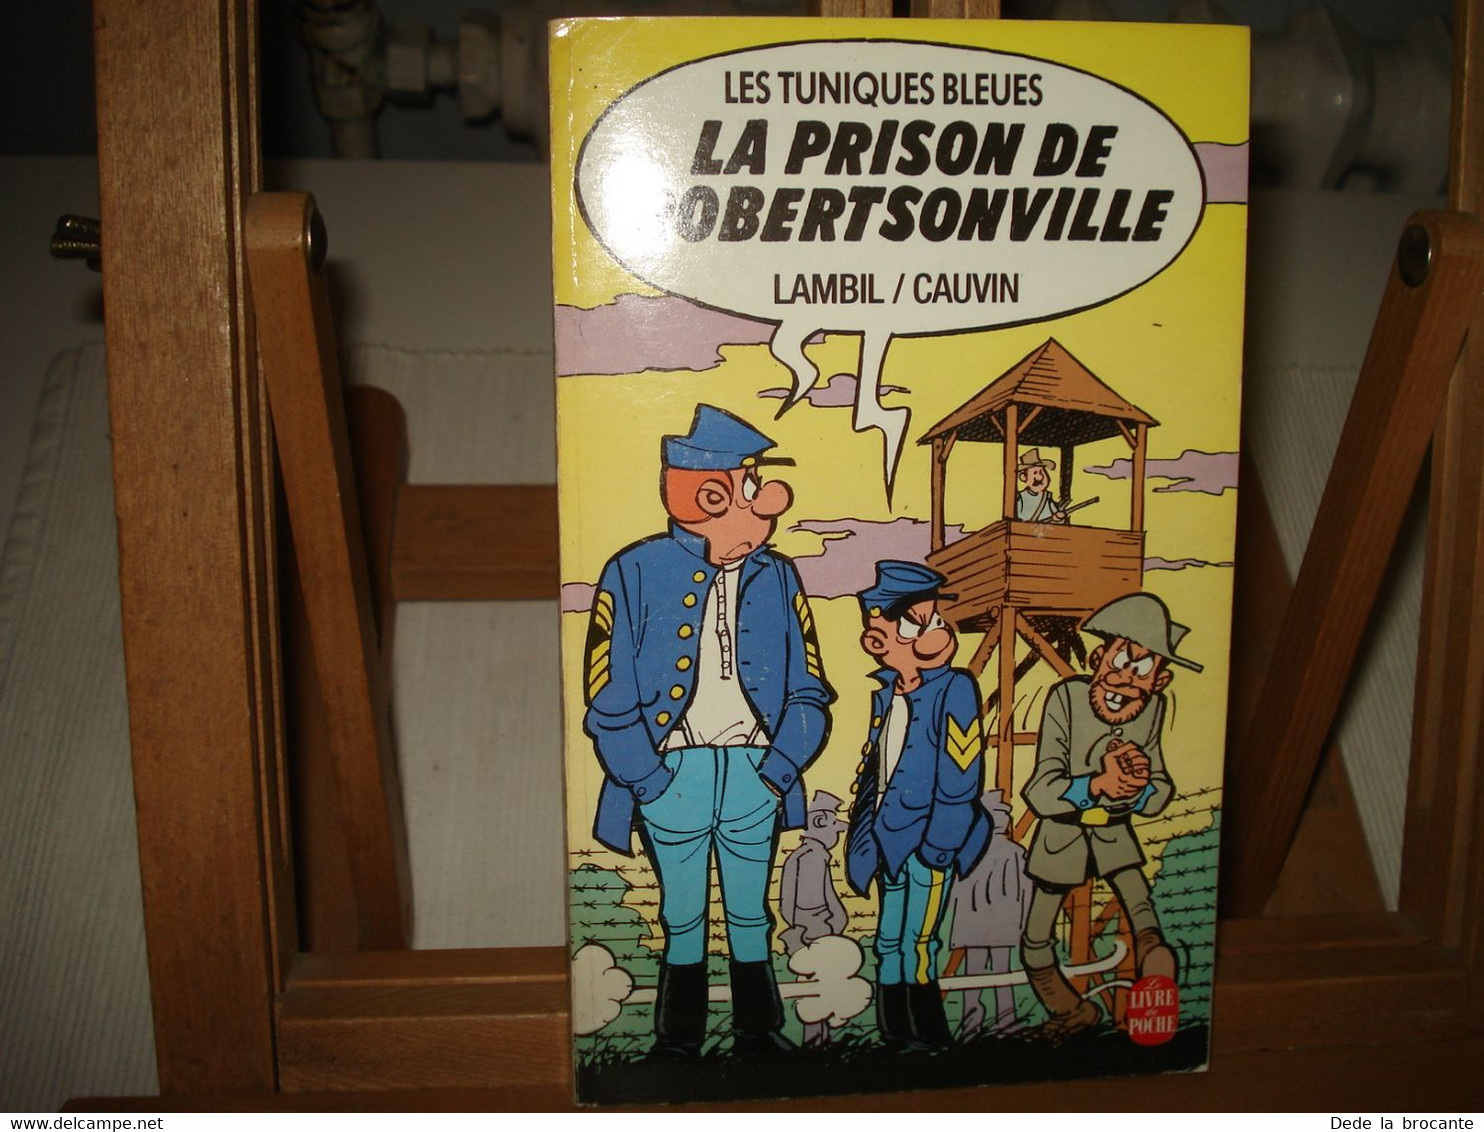 C23 / Collection  " Livre De Poche  "  N° 2052 - Tuniques Bleues " La Prison De Robertsonville " - Lambil Et Cauvin - Tuniques Bleues, Les